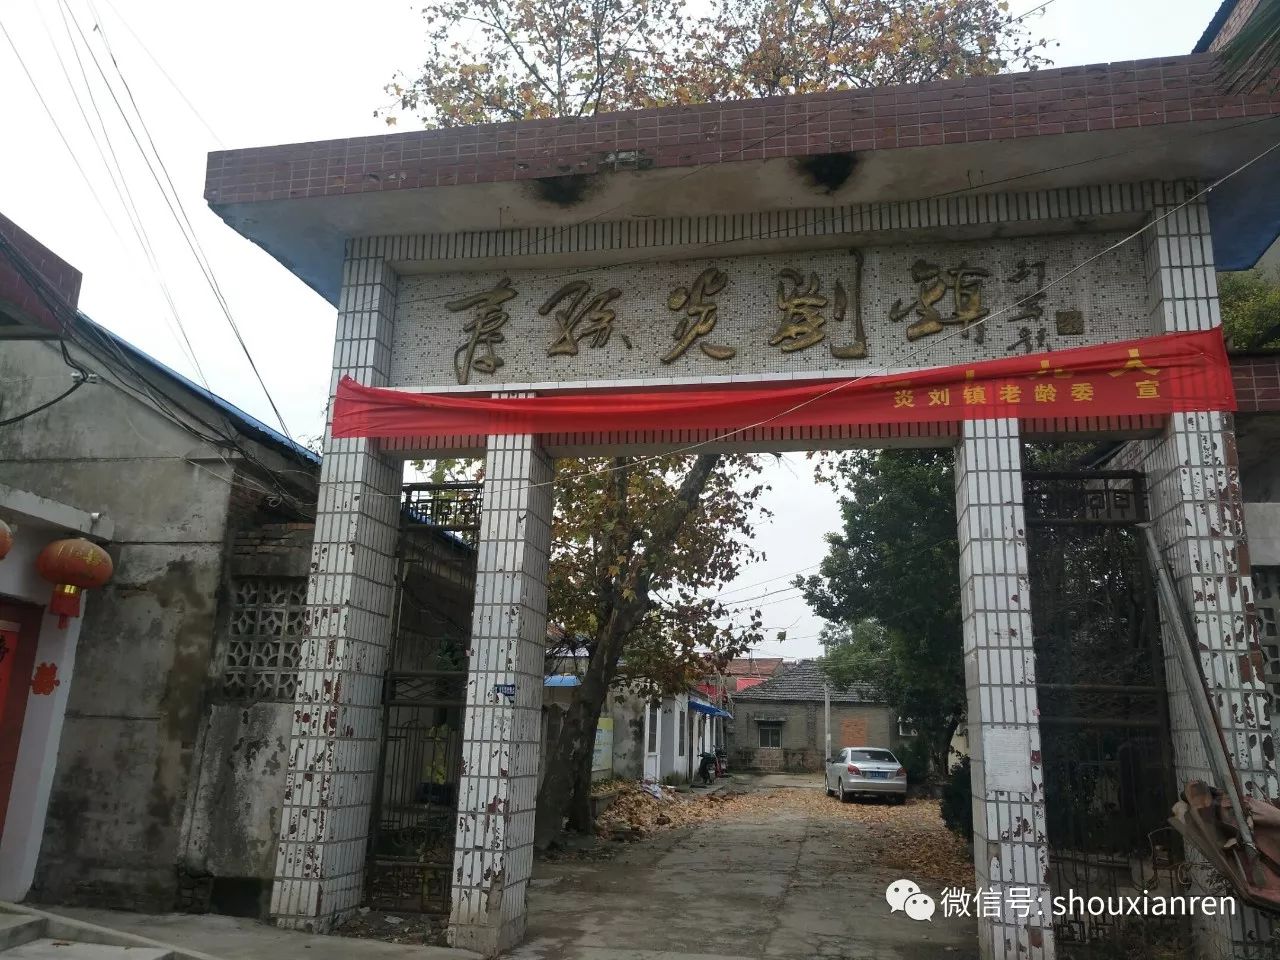 偌大院落分为办公楼和家属区两部分,大院门头镶嵌"寿县炎刘镇"遒劲有